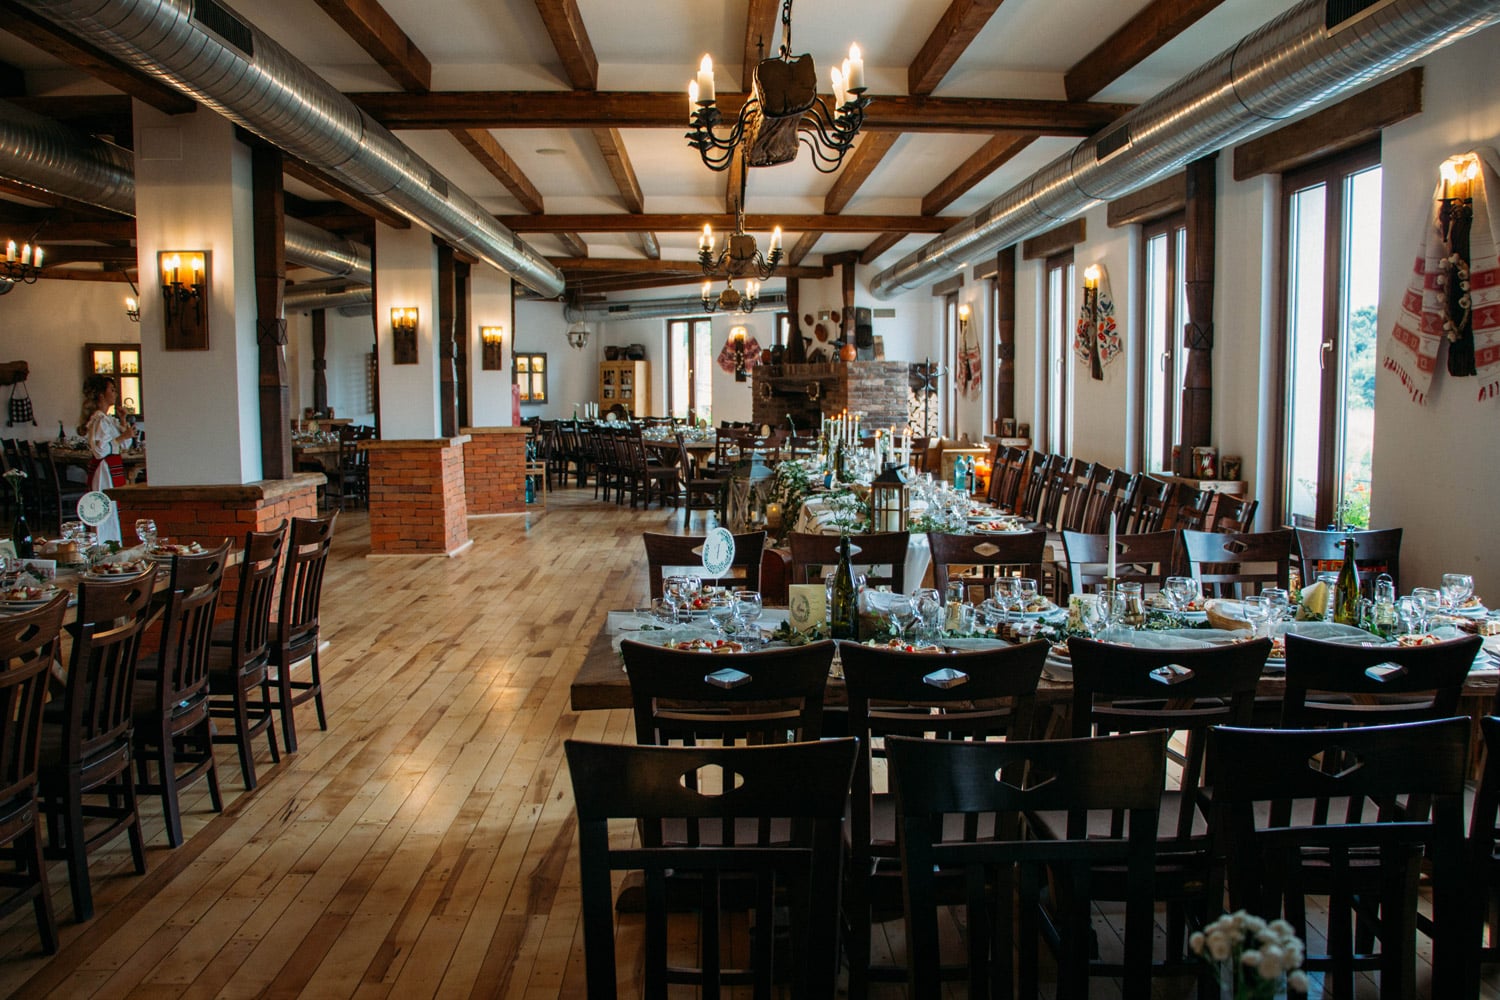 Salon Evenimente Hanul Teilor pentru nunti intr-un decor rustic traditional in Maramures